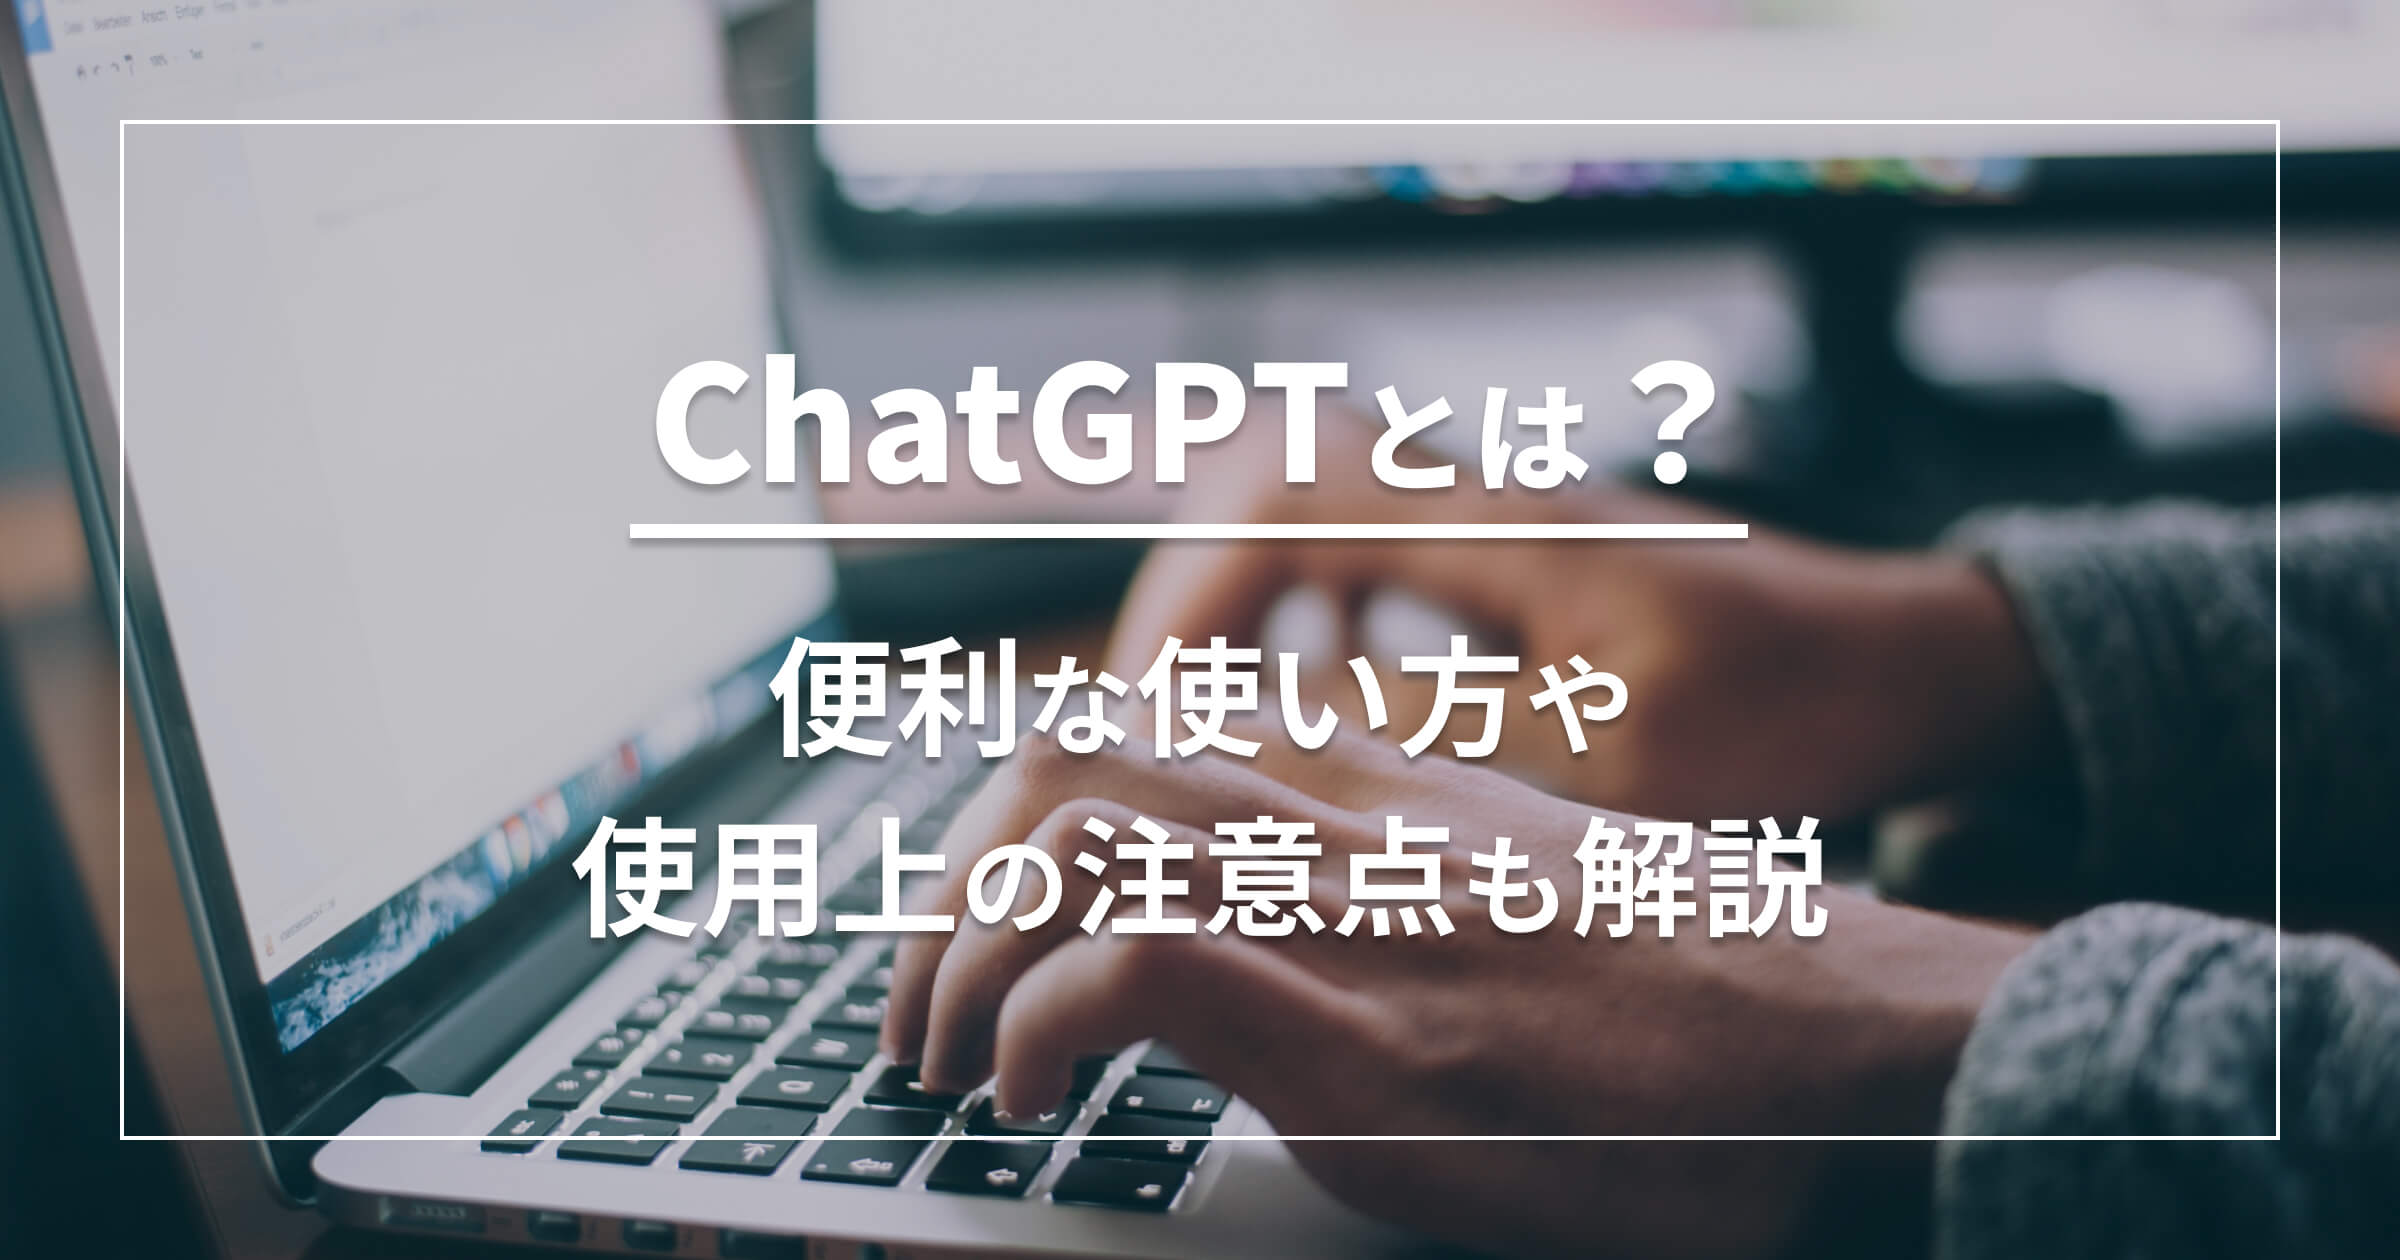 ChatGPTとは？便利な使い方や使用上の注意点も解説